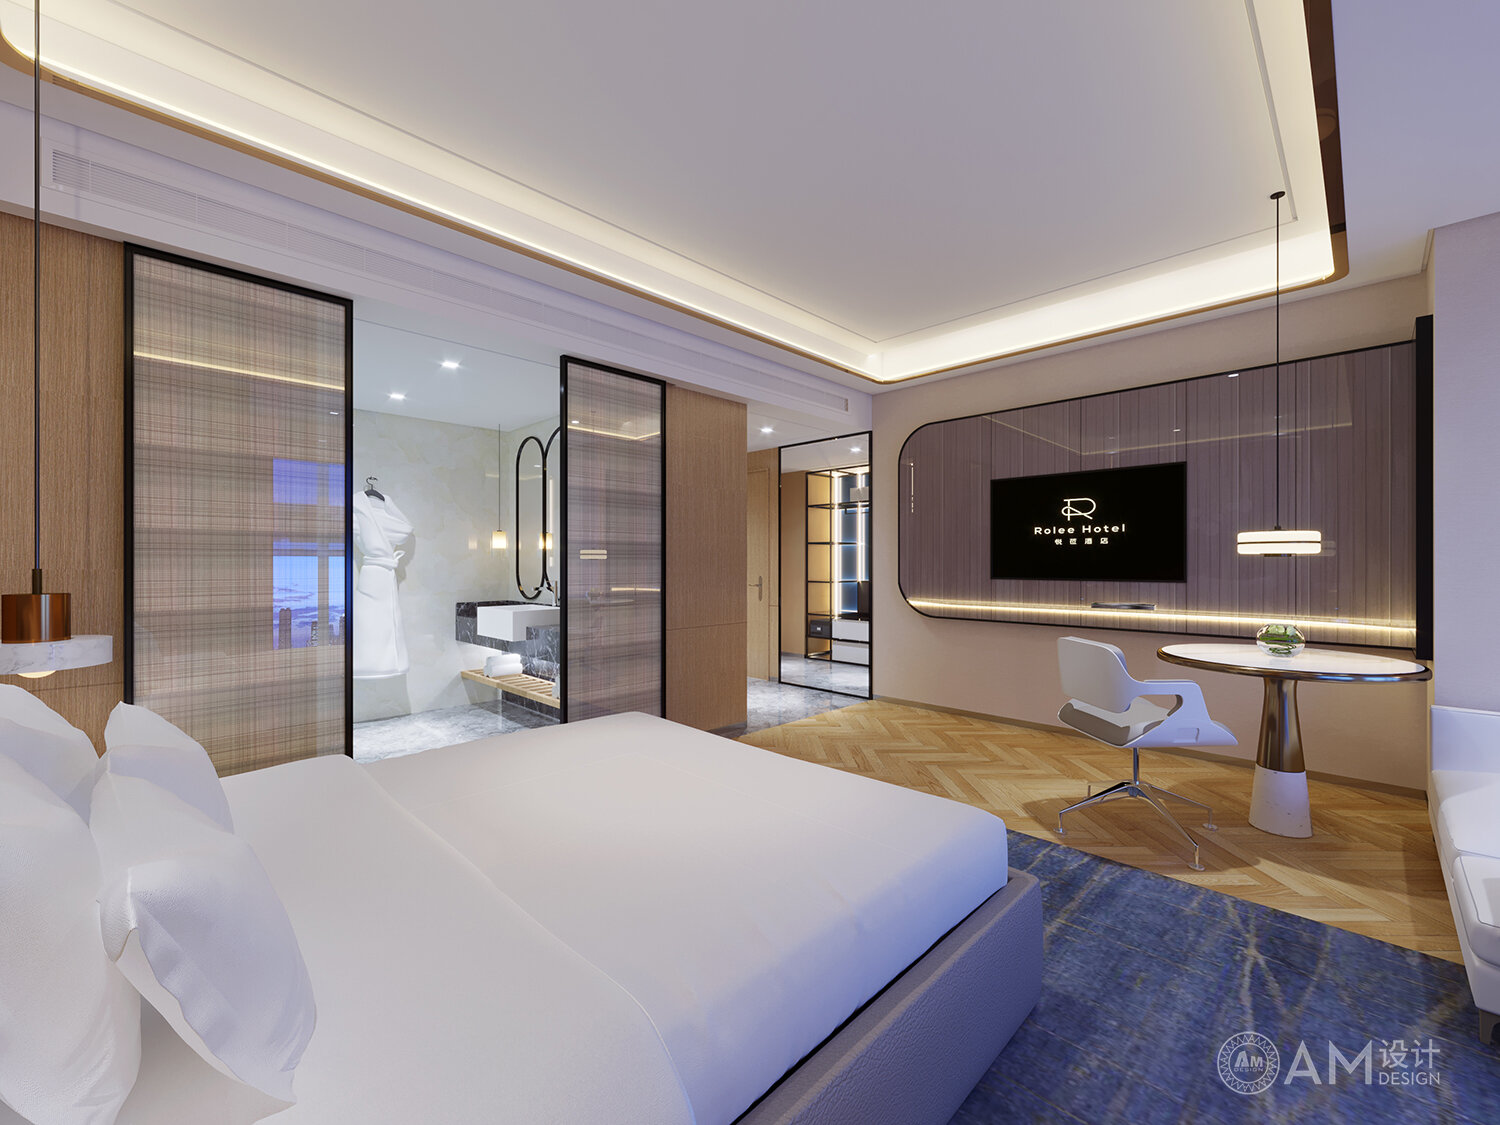 AM|Yuelai Hotel Room Design